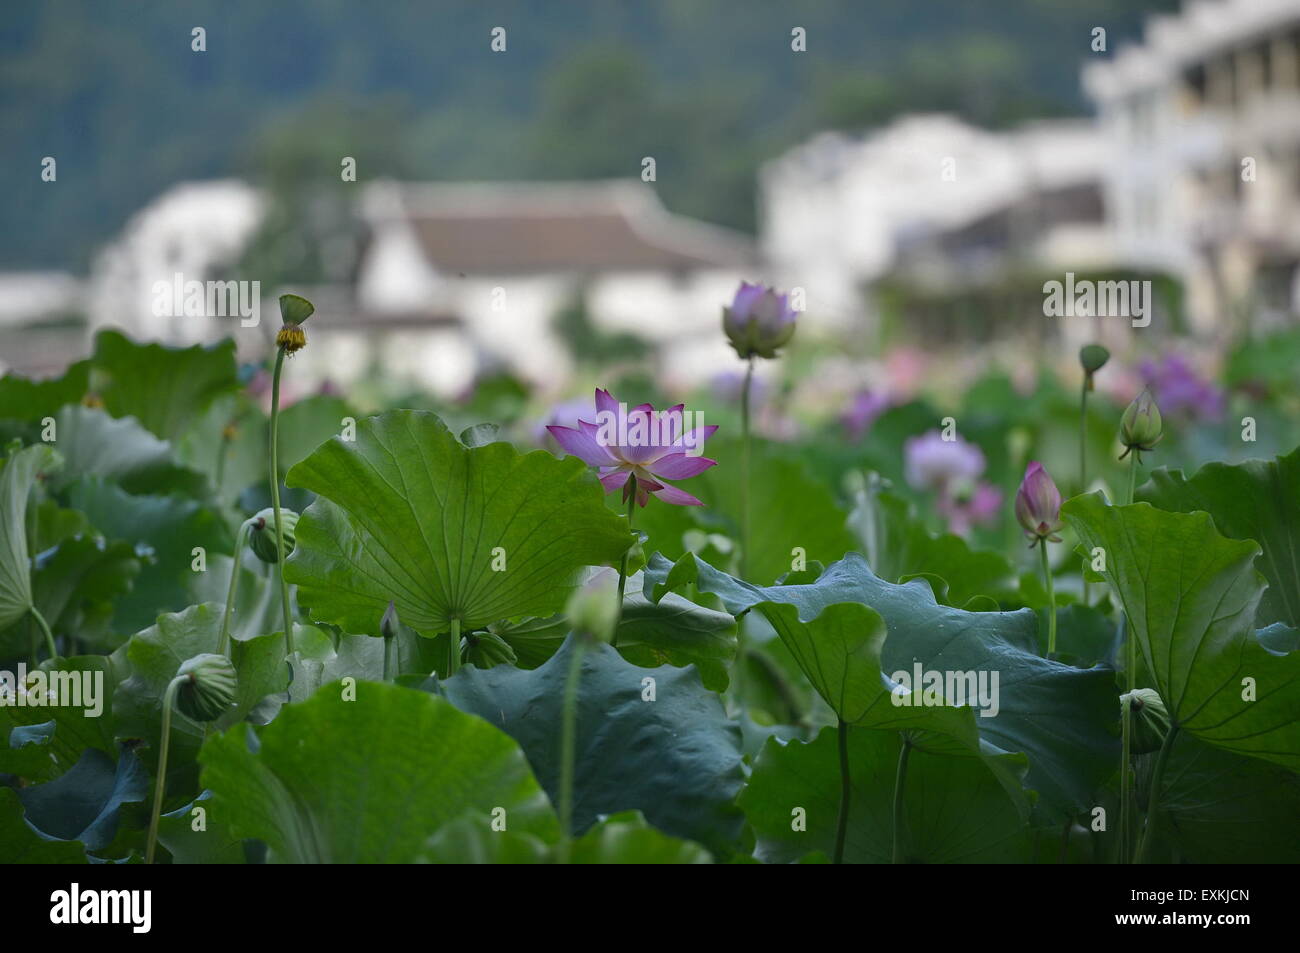 Nanchang, cinese della provincia di Jiangxi. 14 Luglio, 2015. I fiori di loto sono in piena fioritura nel villaggio Yaoxi di Guangchang County, Cina orientale della provincia di Jiangxi, luglio 14, 2015. Yaoxi Village, che ha più di 1.300 anni di storia per la piantagione di lotus, ha 90.000 um (6.000 ettari ) di piantagione zona con produzione annuale in grado di colpire 540 milioni di yuan (87 milioni di dollari). © Zhou Mi/Xinhua/Alamy Live News Foto Stock